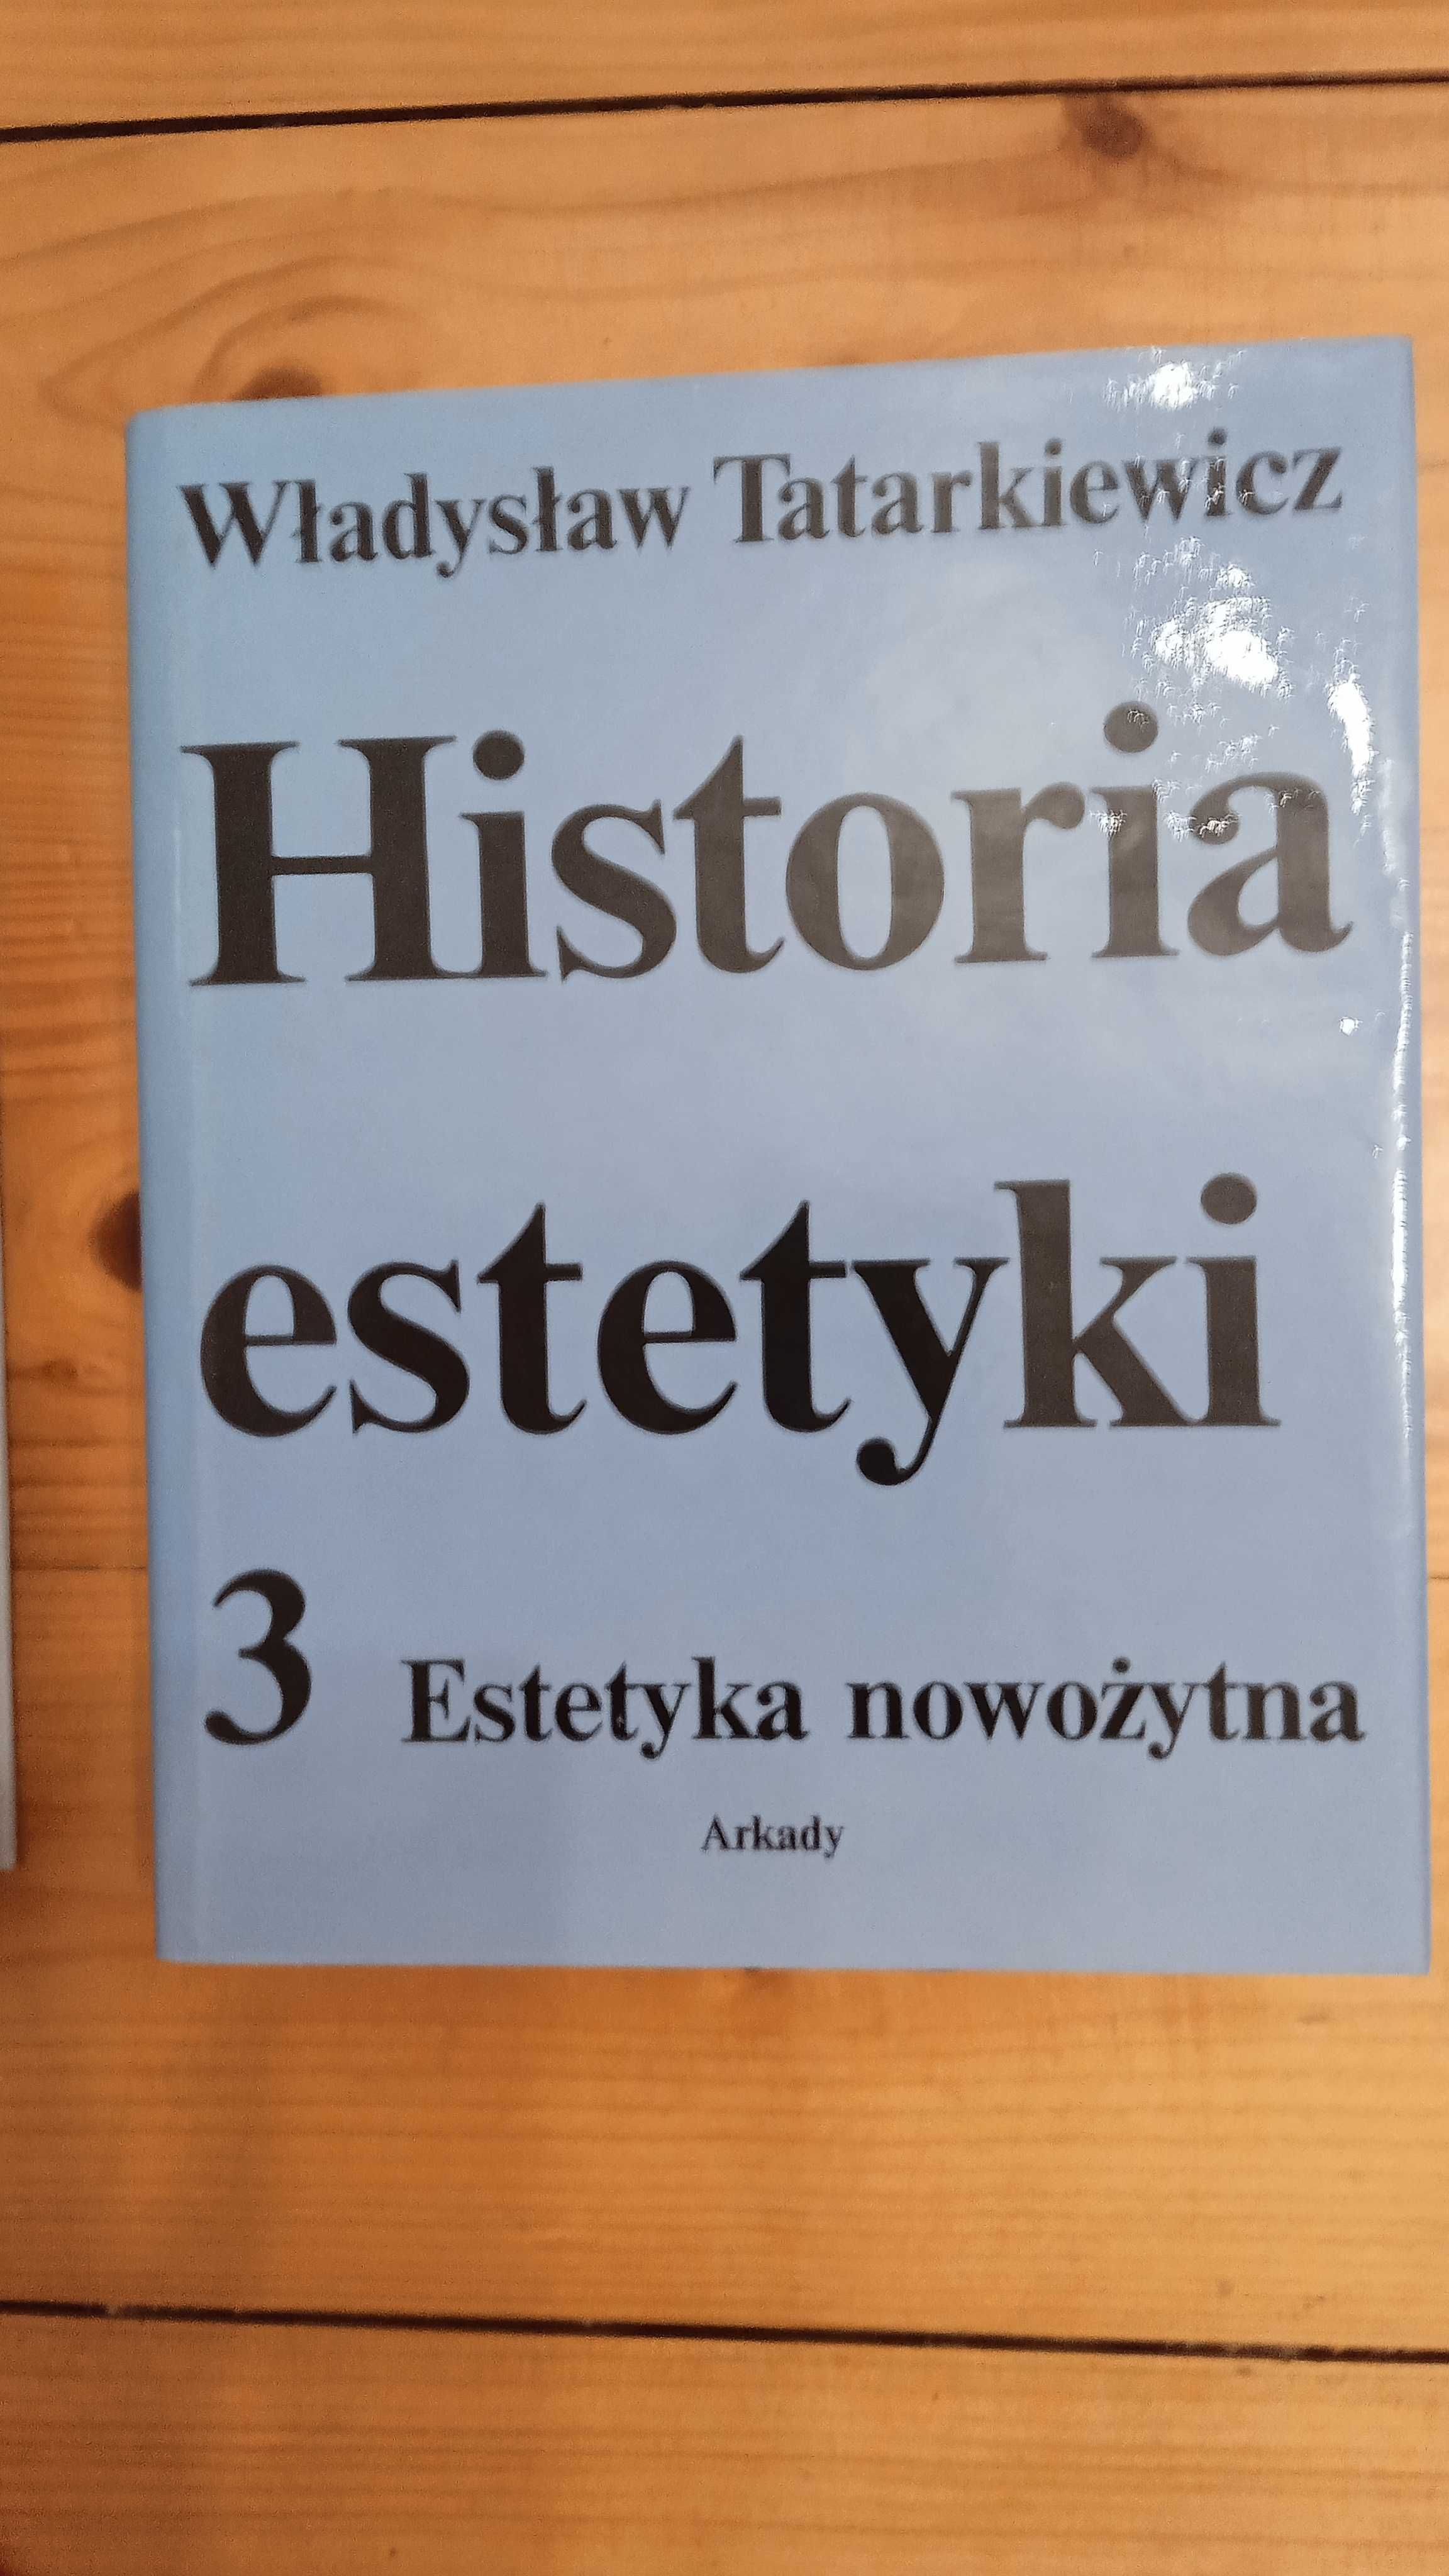 Historia estetyki - Władysław Tatarkiewicz, 3 tomy, wyd. Arkady.